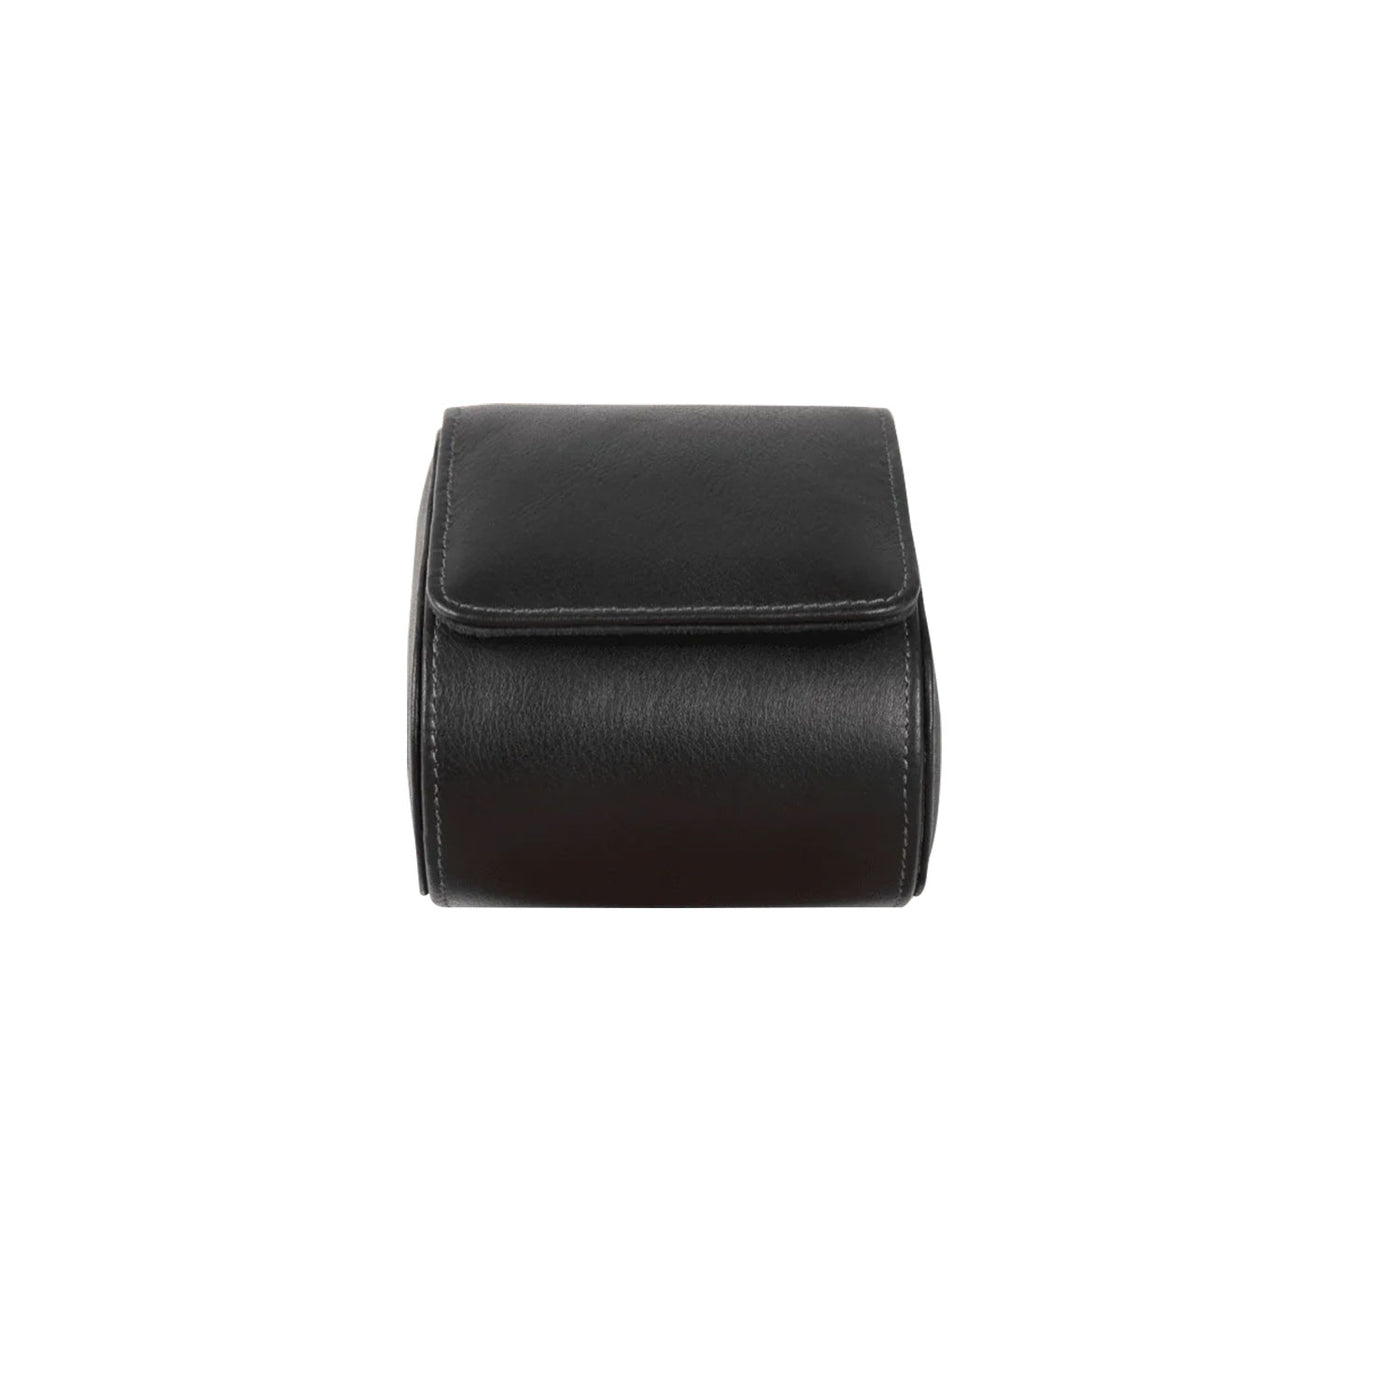 Elan Leather Single Watch Case - Black 3